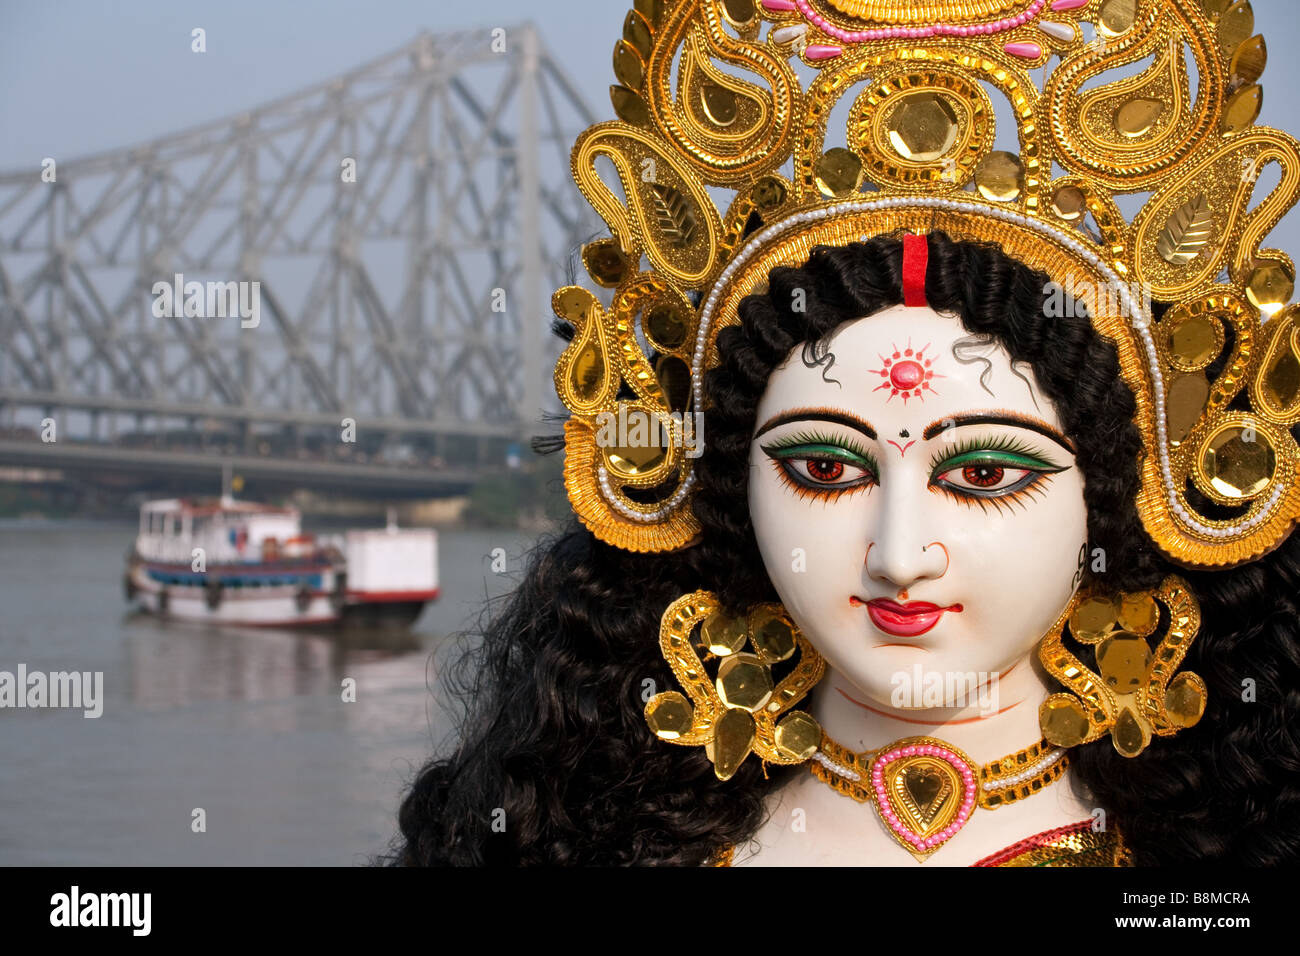 Goddess Saraswati with Calcutta's Howrah Bridge in the background, India Stock Photo